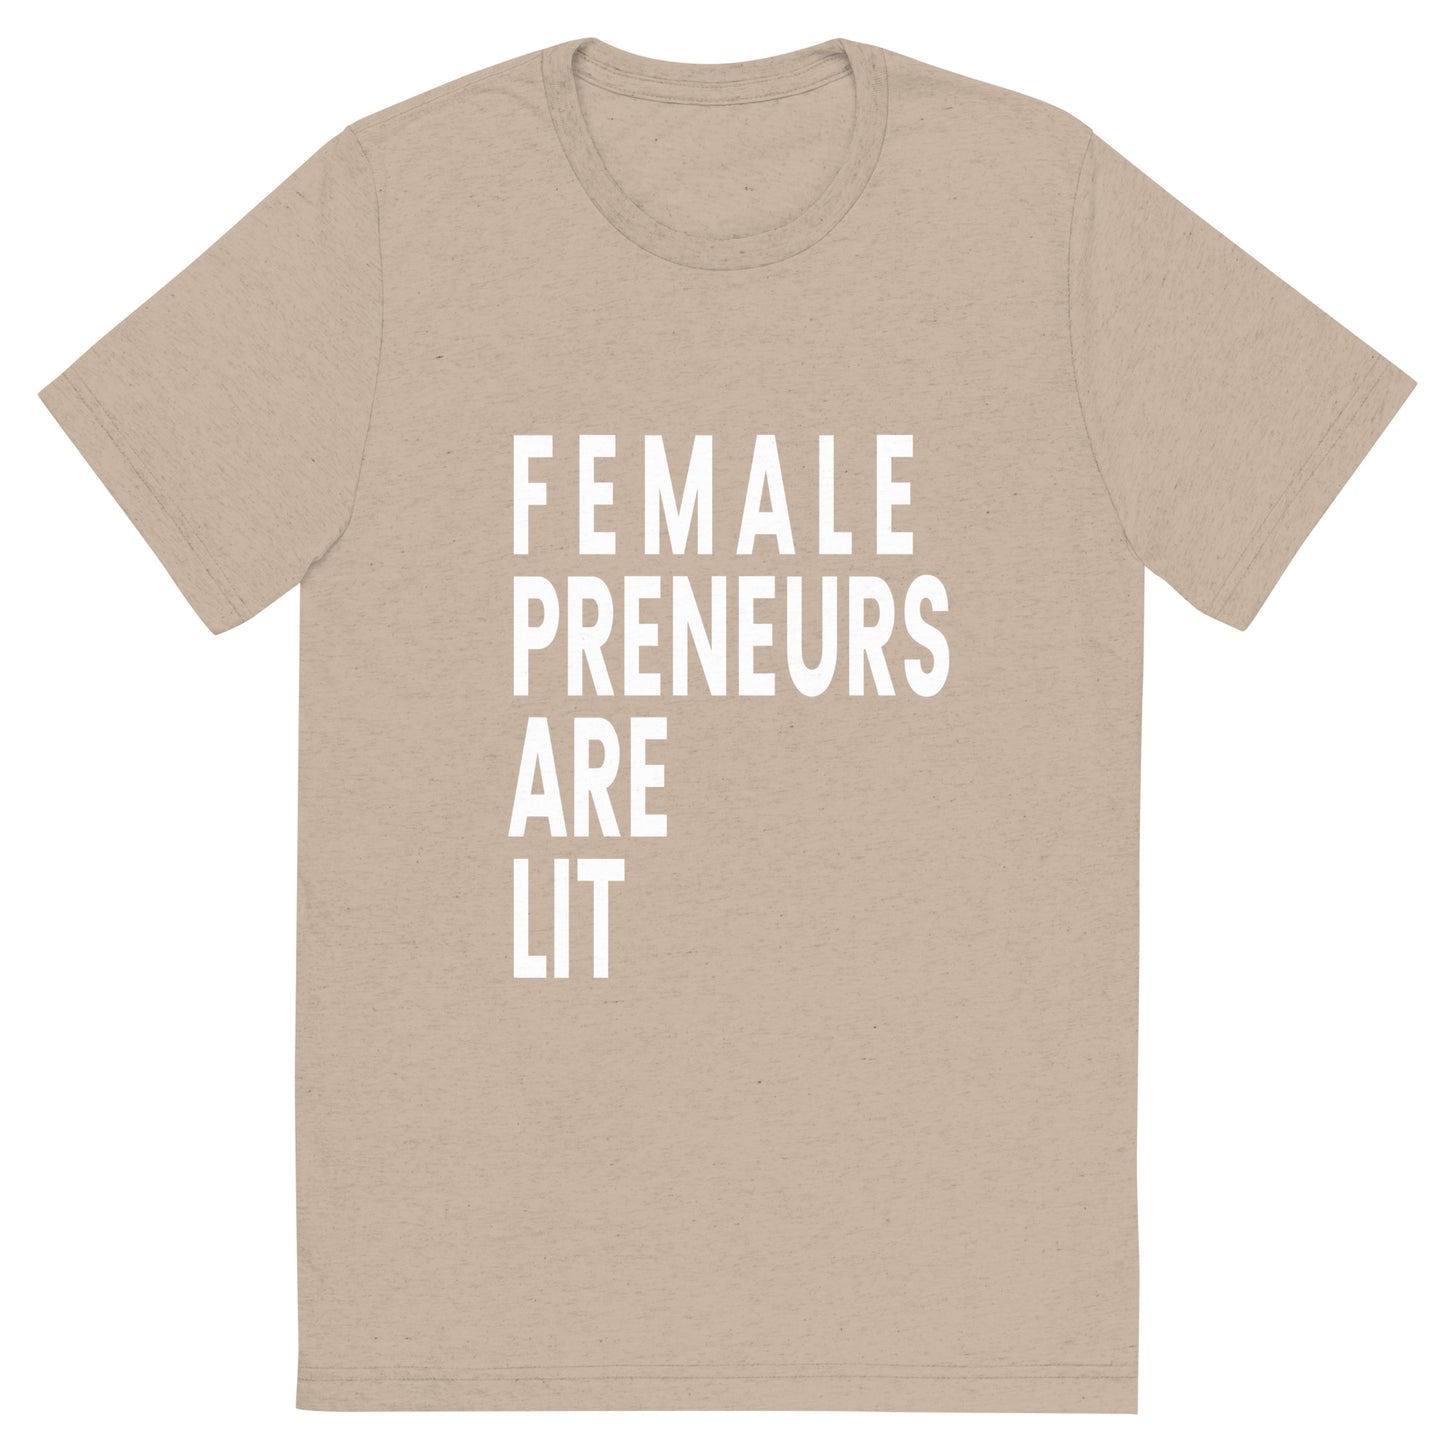 Femalepreneurs Are Lit!